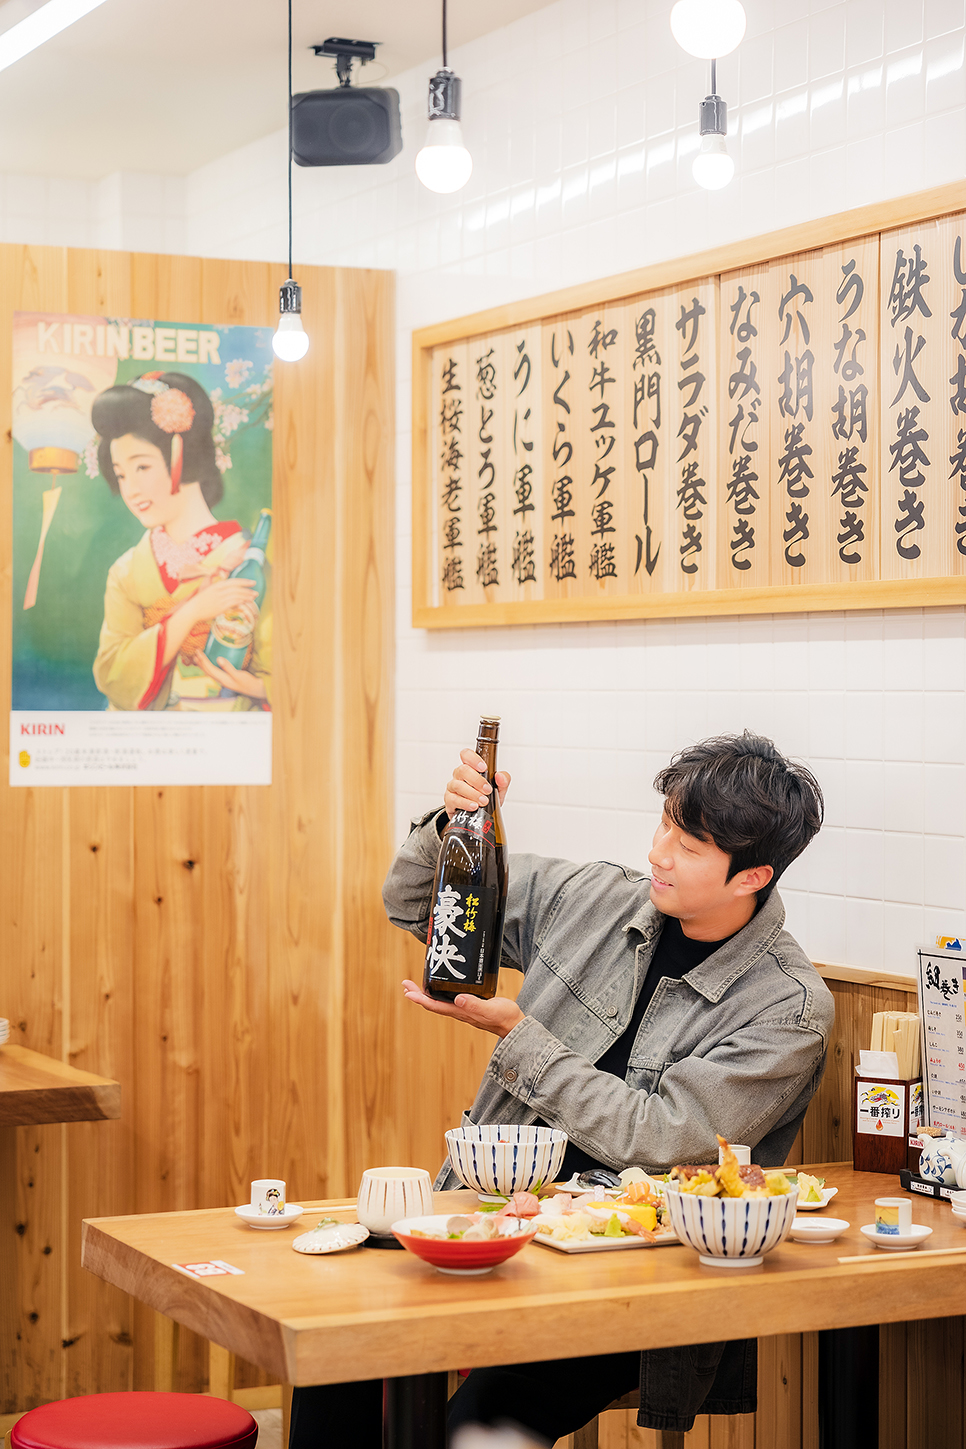 오사카 도톤보리 스시 맛집 쿠로몬스시 오마카세 먹방 타임